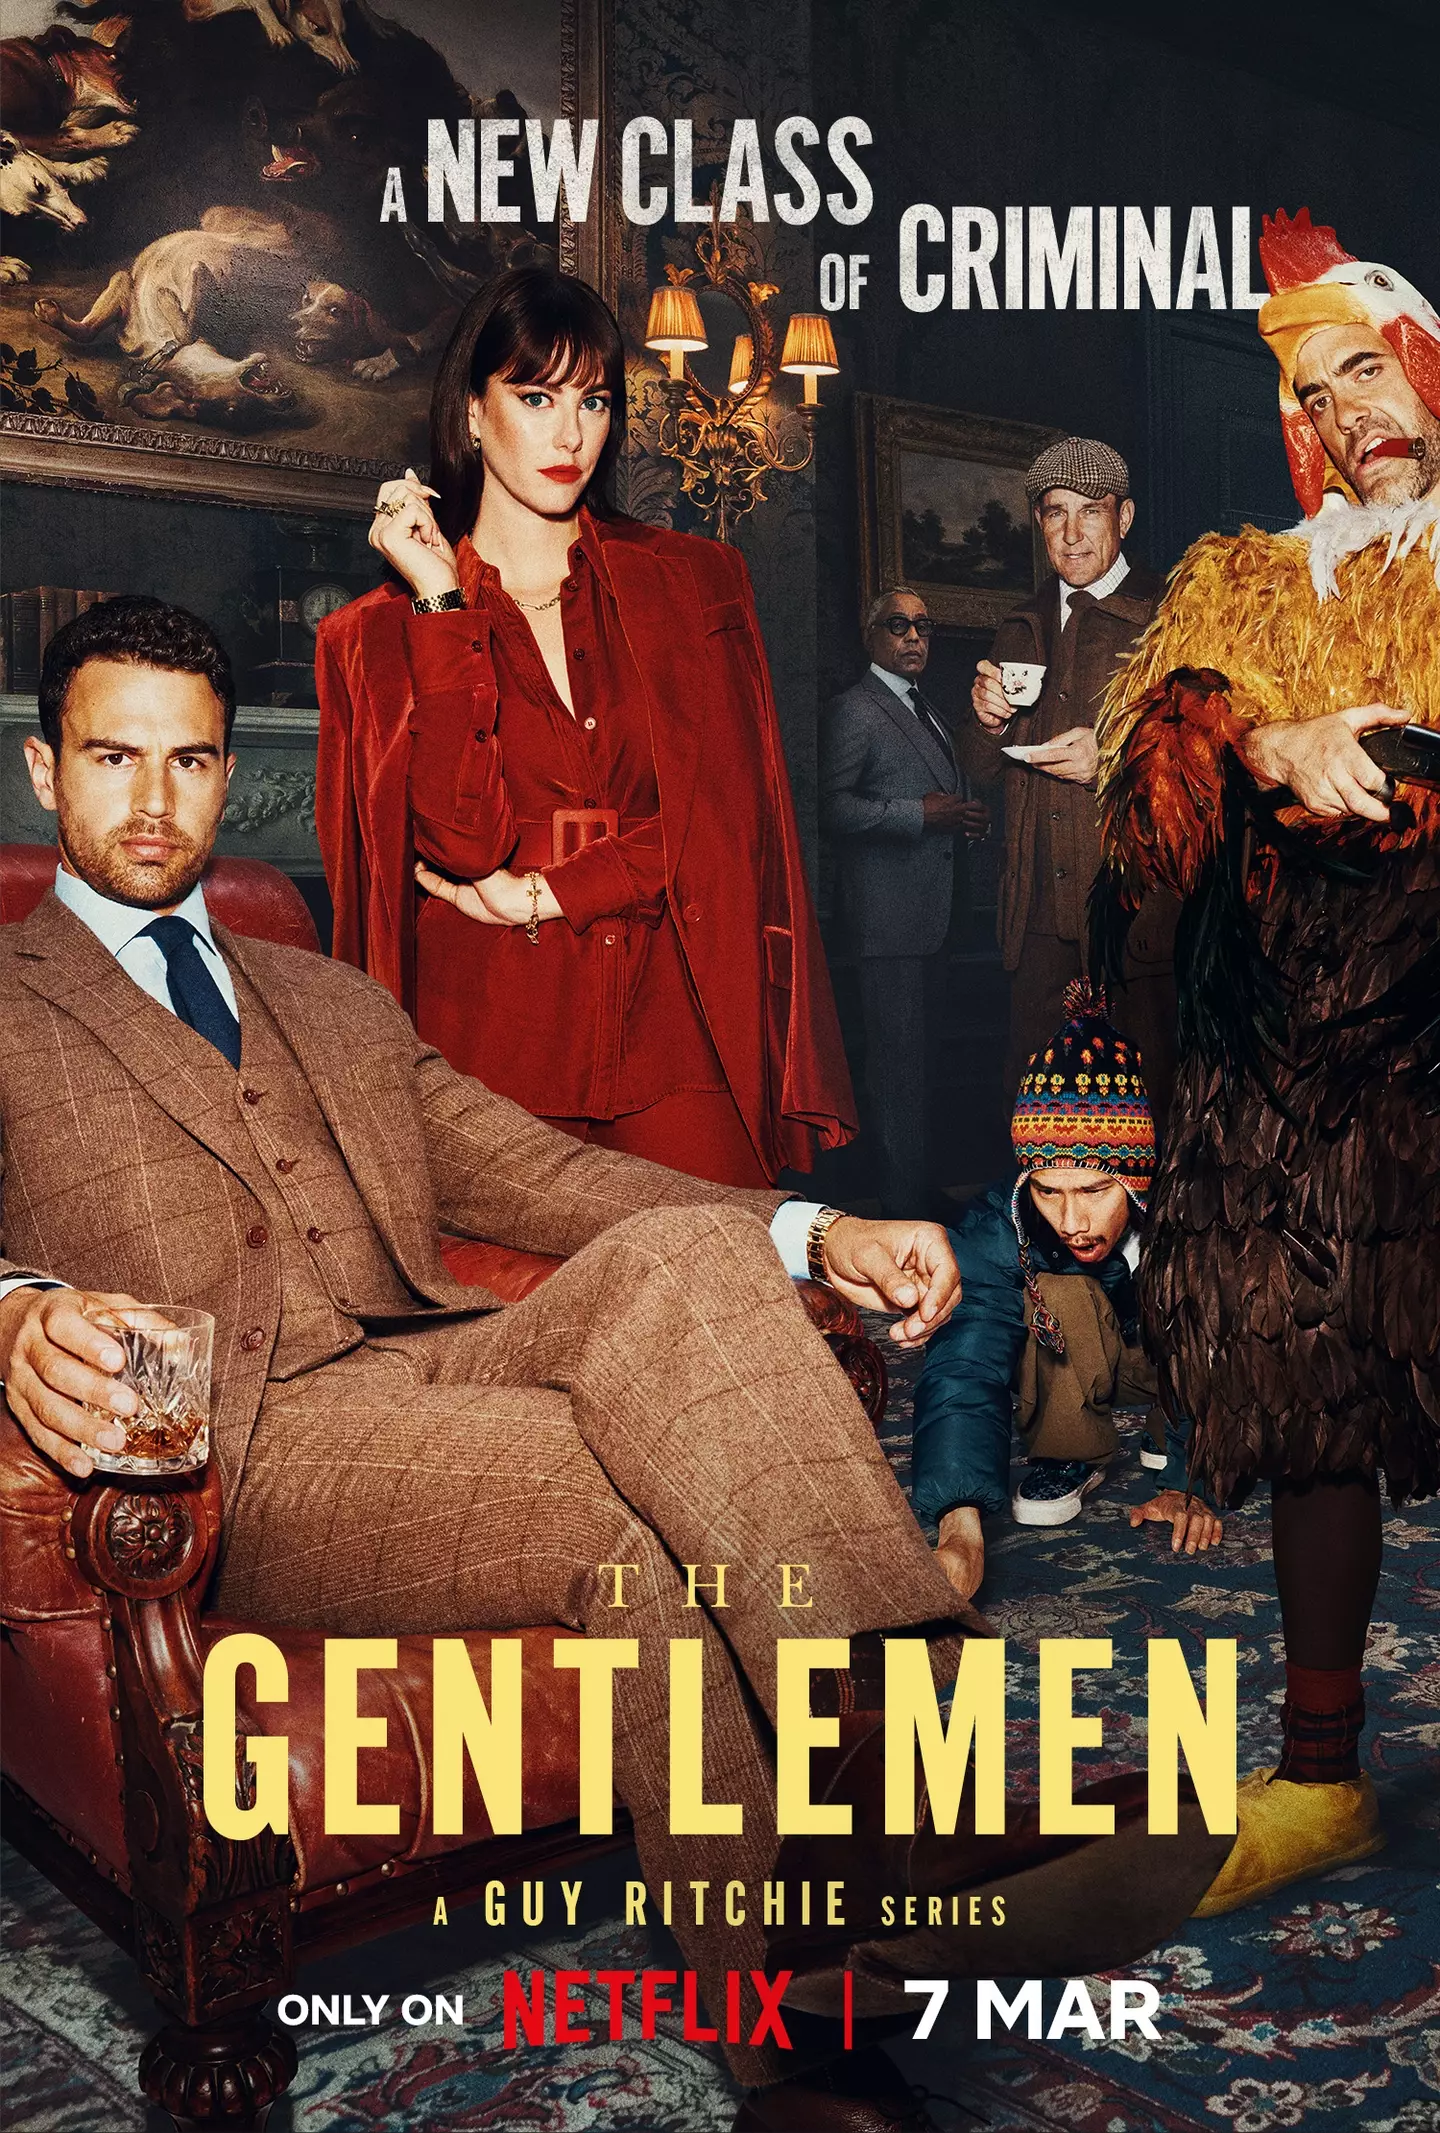 Netflix's The Gentlemen stars Theo James, Ray Winstone, Kaya Scodelario, Giancarlo Esposito and Vinnie Jones.